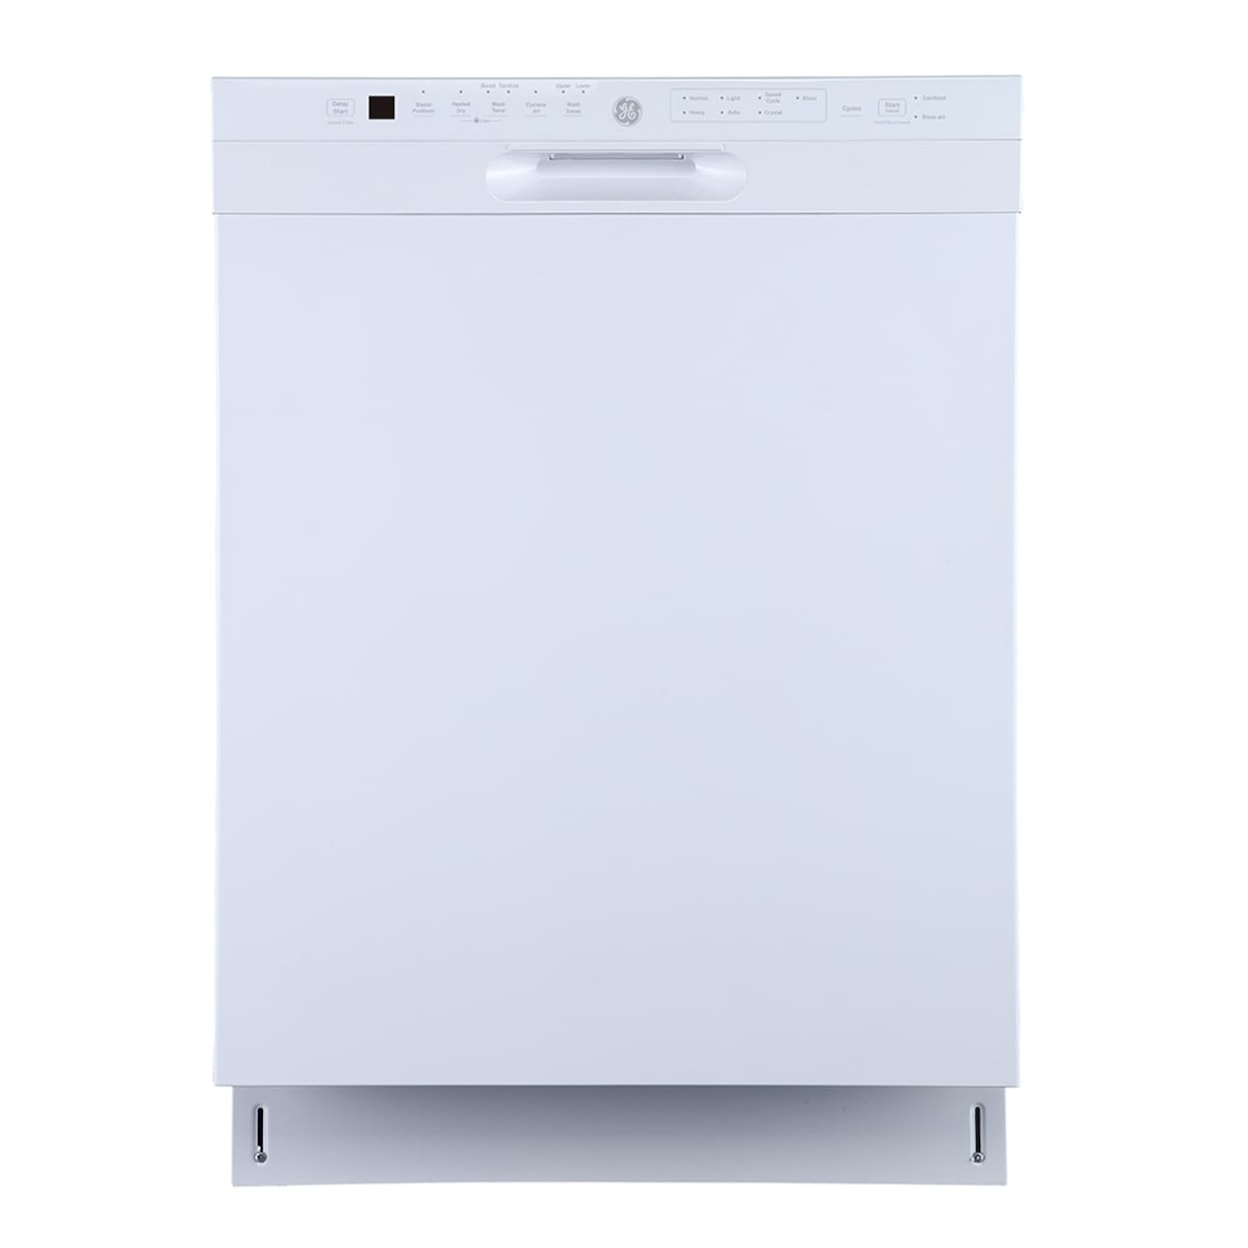 GE Appliances Dishwashers 24" Front Control White Dishwasher